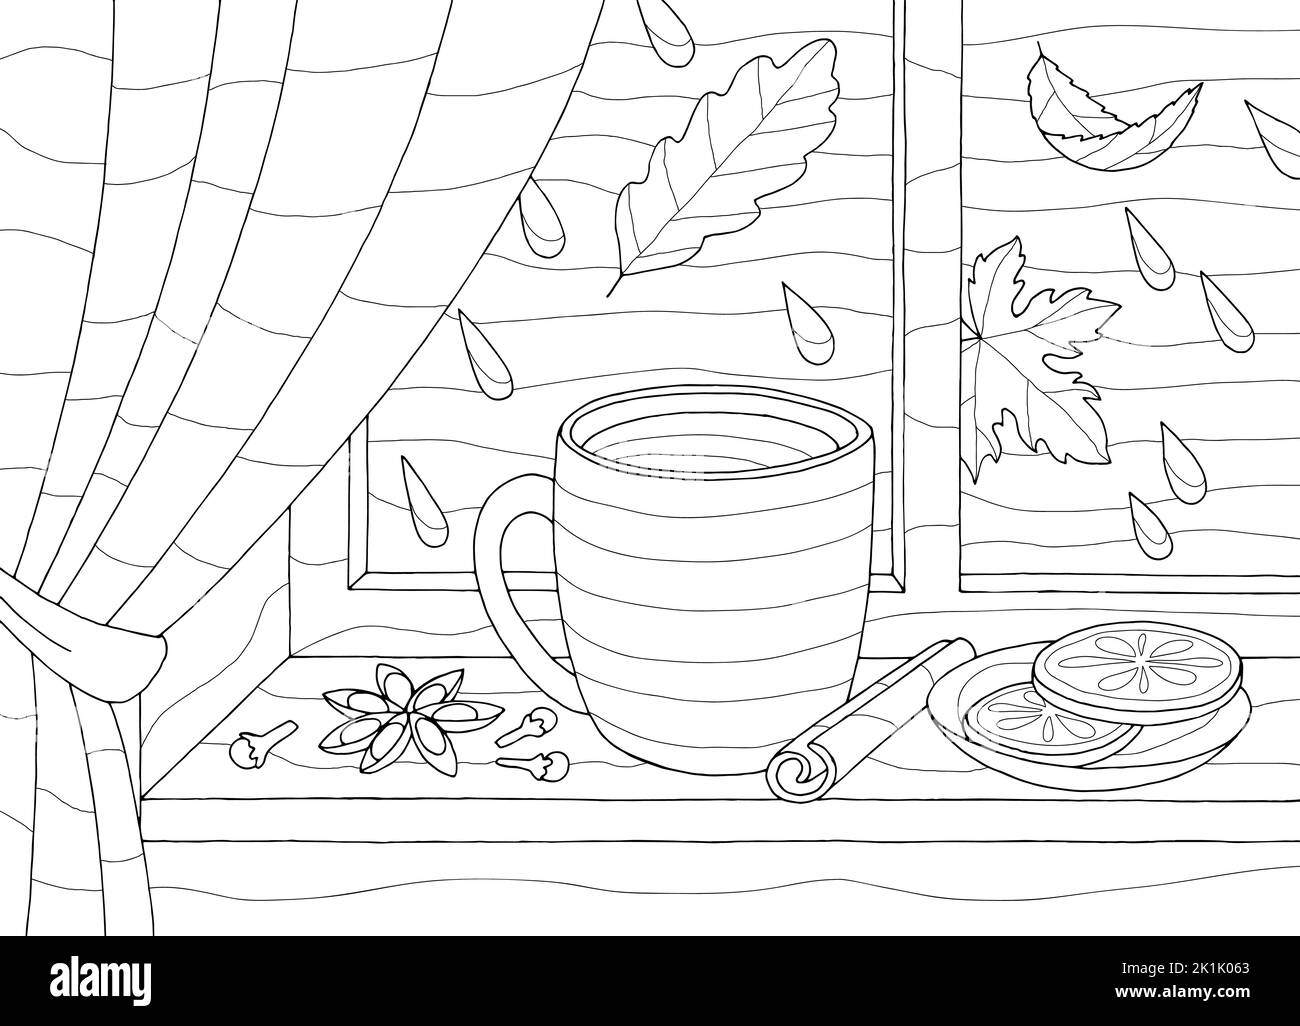 Herbst Fenster Malbuch Grafik schwarz weiß Skizze Illustration Vektor Stock Vektor